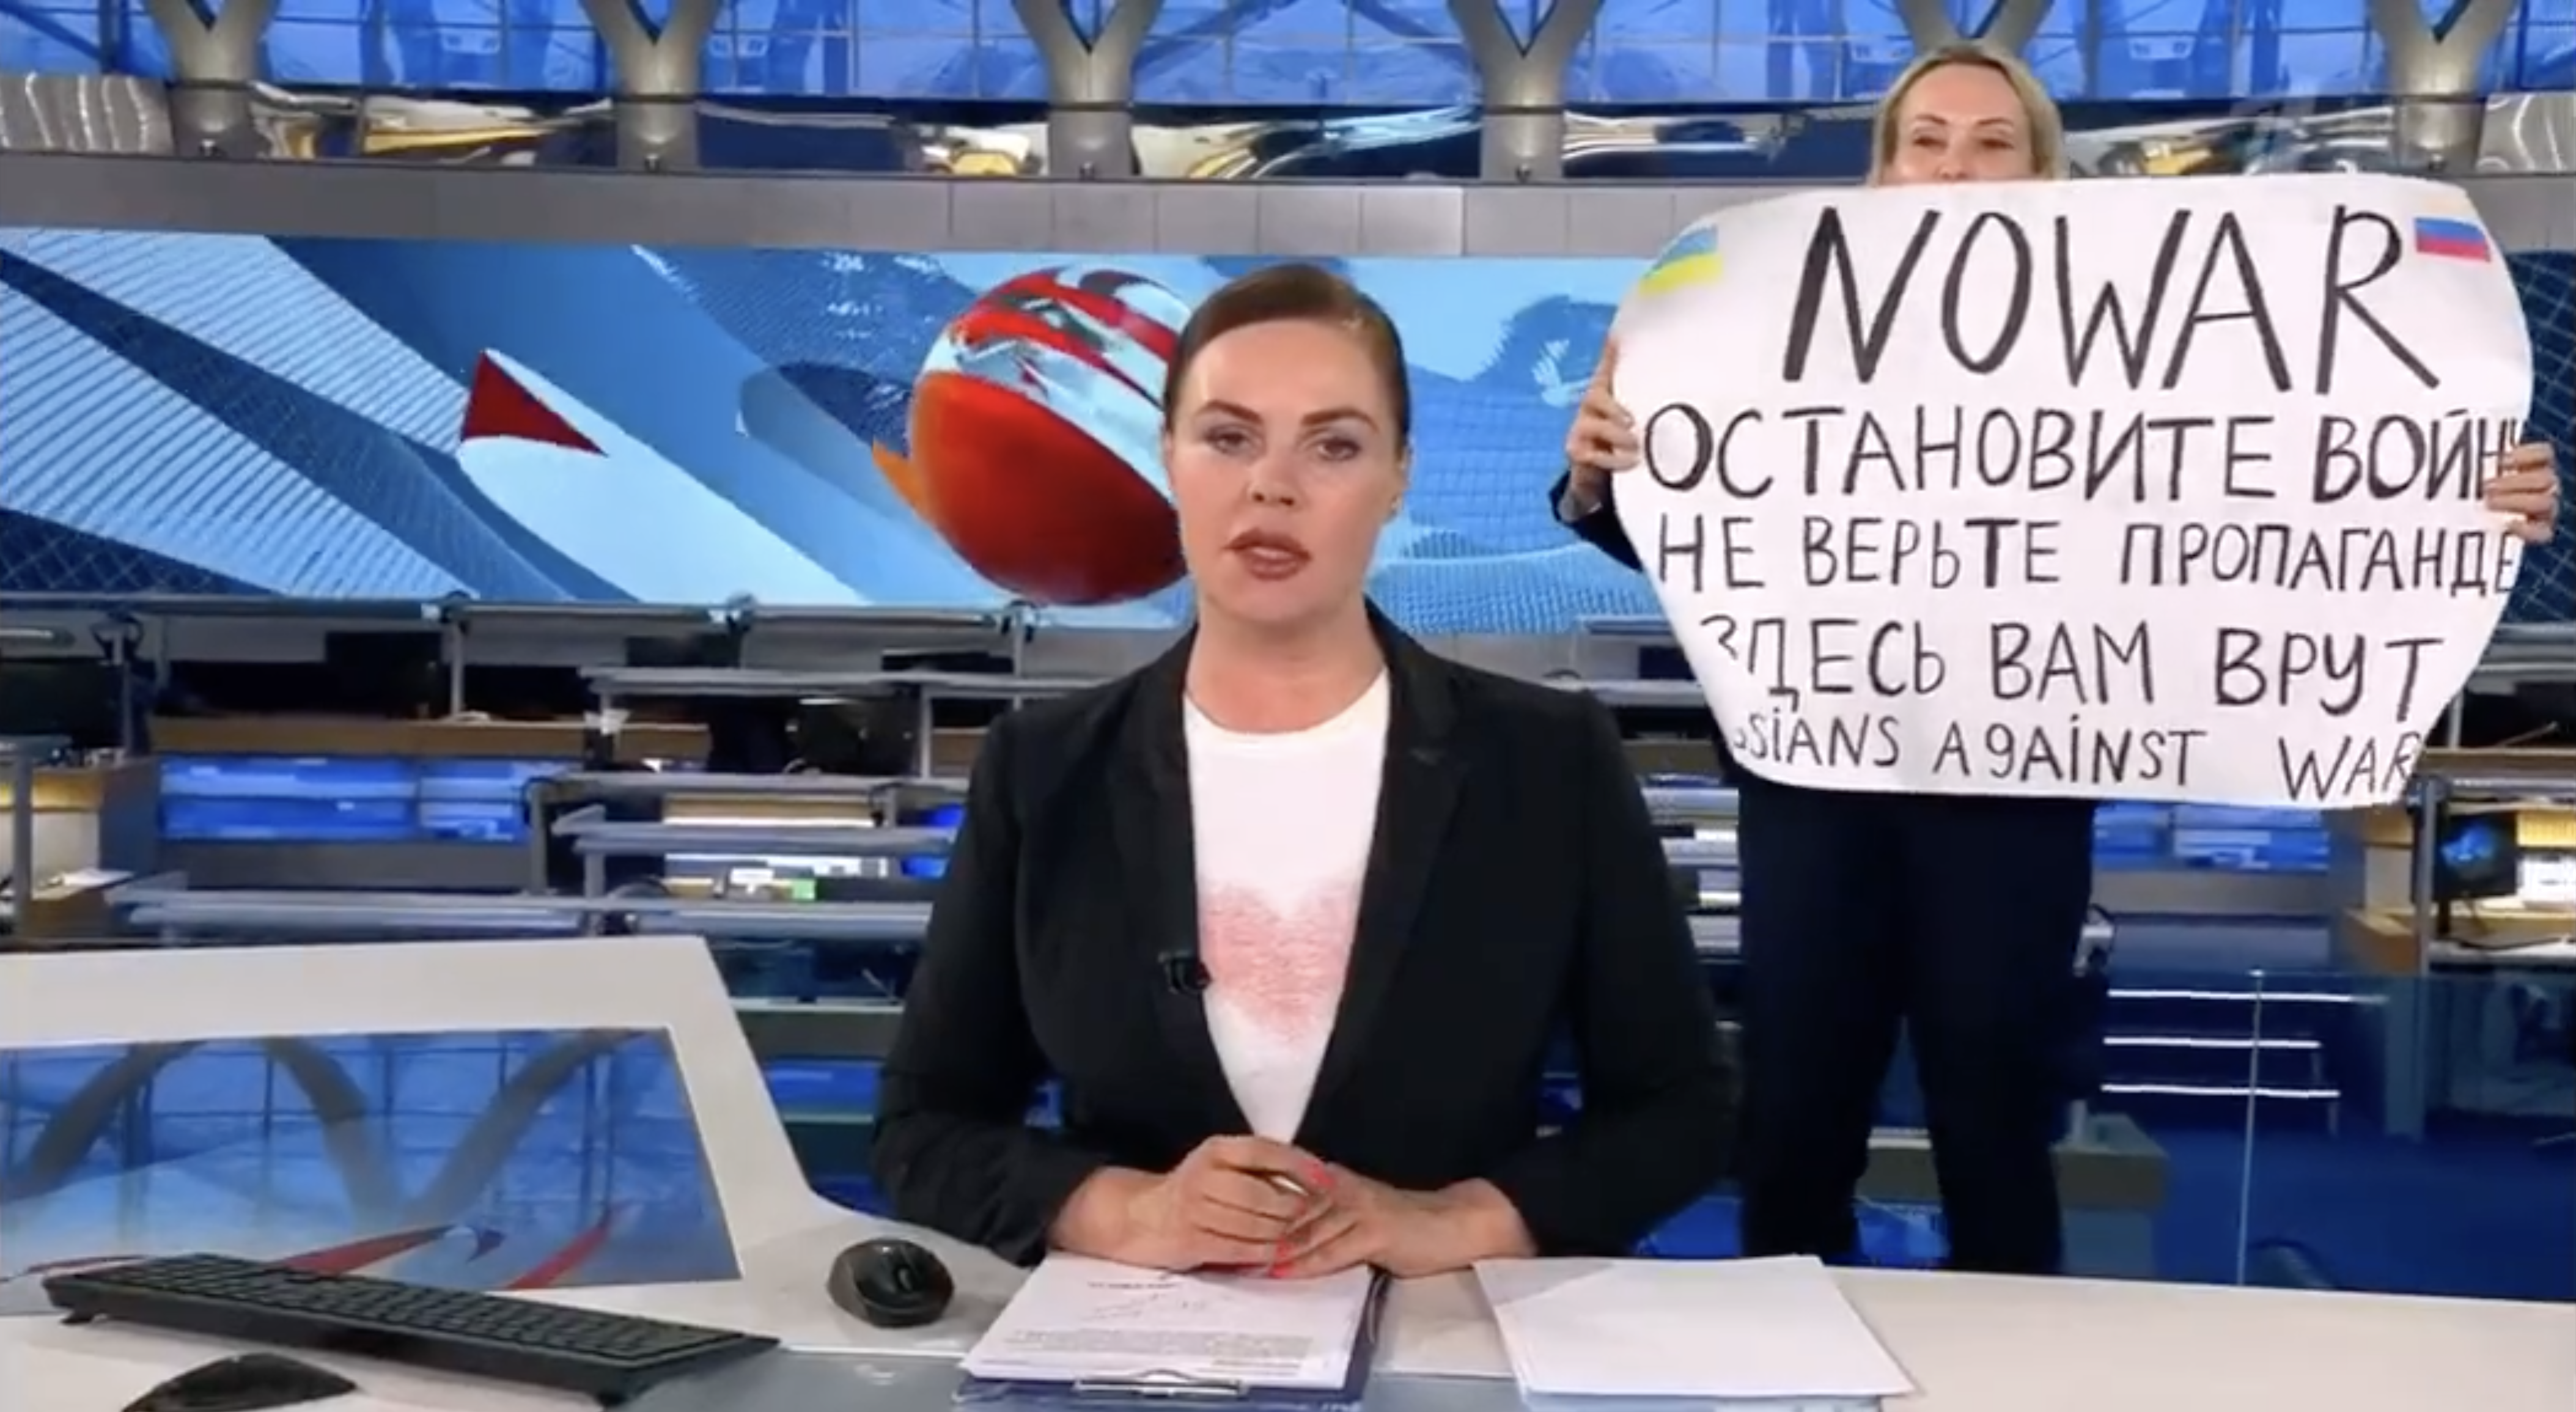 La protesta contra la guerra irrumpe en un informativo ruso